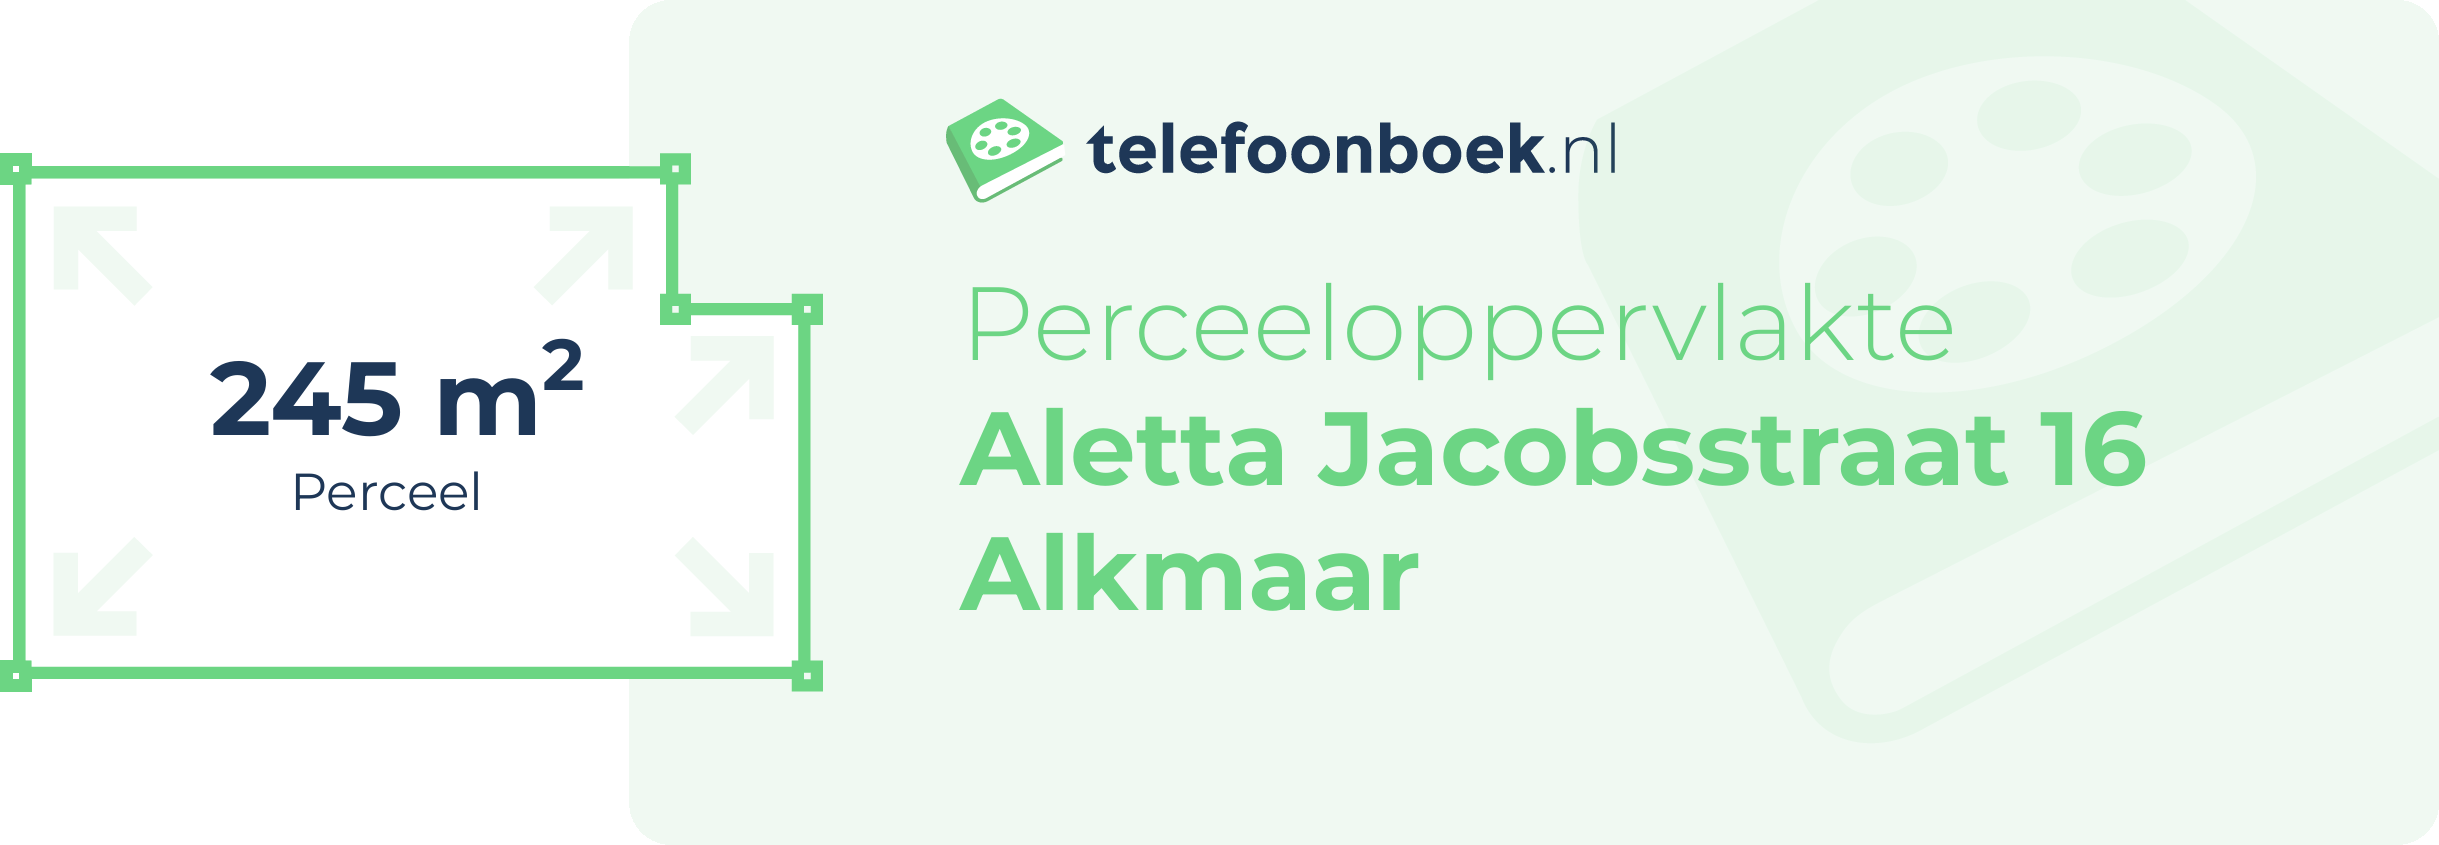 Perceeloppervlakte Aletta Jacobsstraat 16 Alkmaar